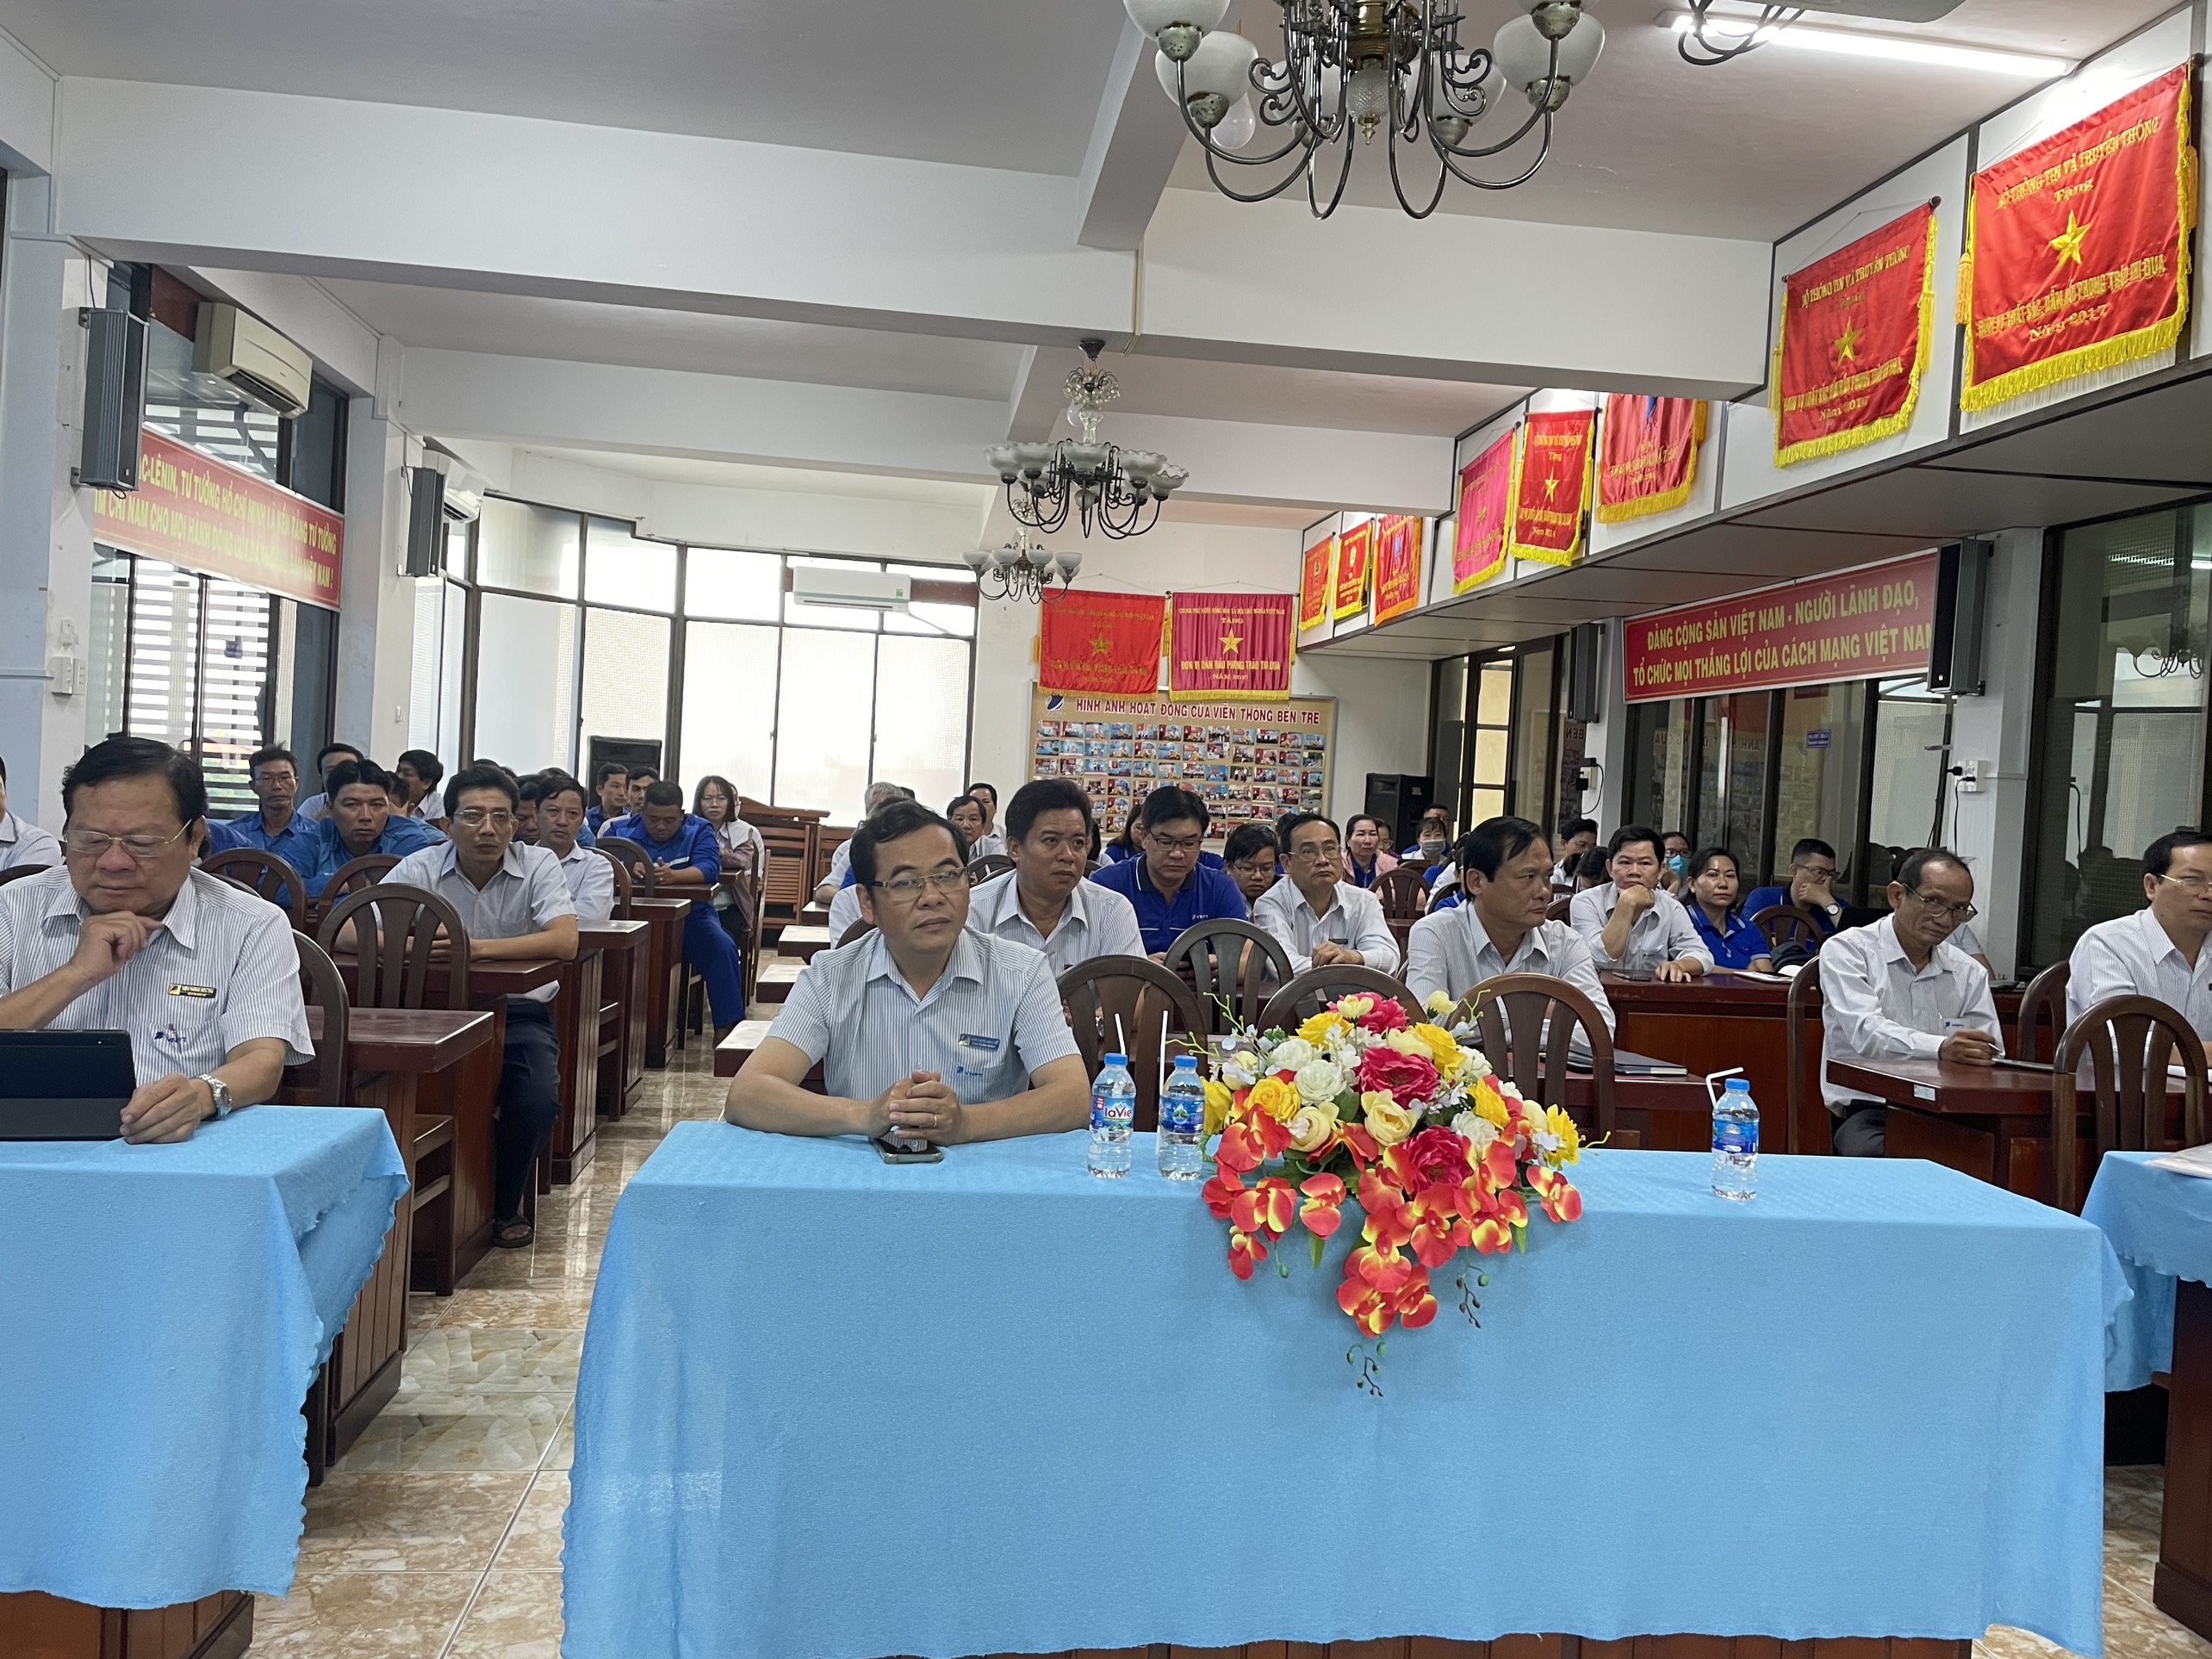 Đảng ủy Viễn thông Bến Tre tổ chức học tập, quán triệt và tuyên truyền Nghị quyết Hội nghị lần thứ tám Ban Chấp hành Trung ương Đảng khóa XIII.